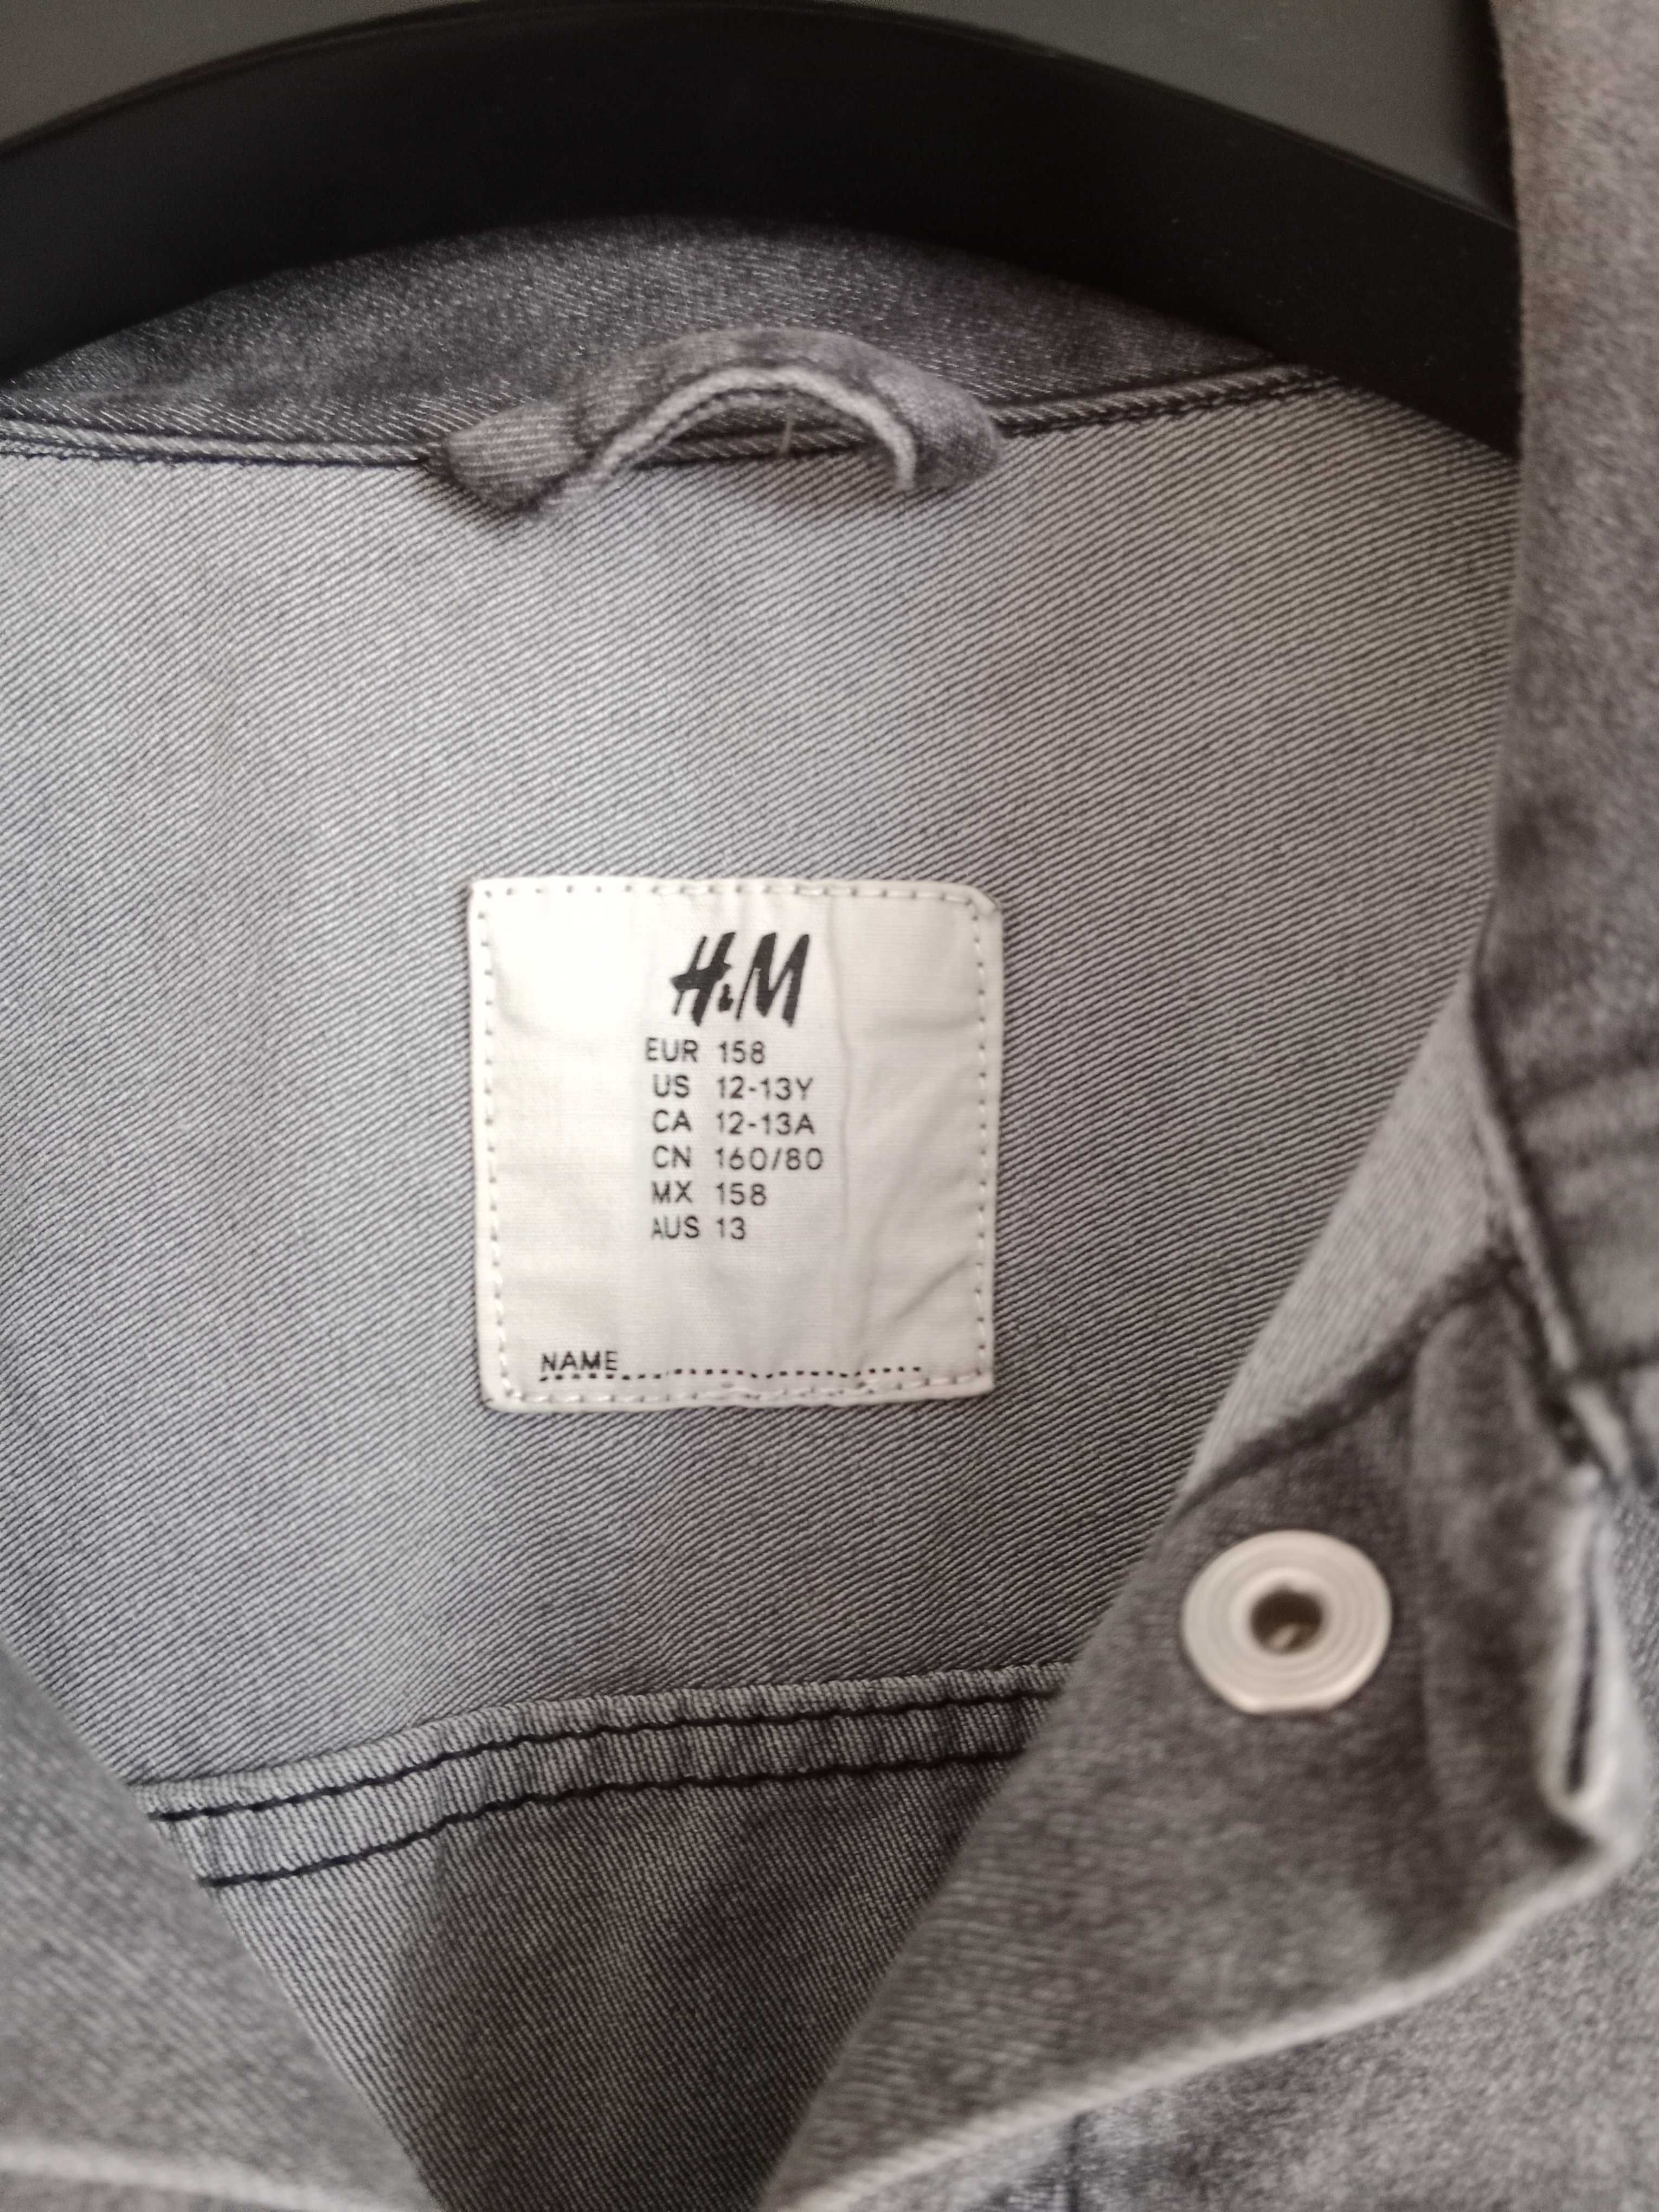 Kurtka jeansowa firmy H&M na wzrost 158